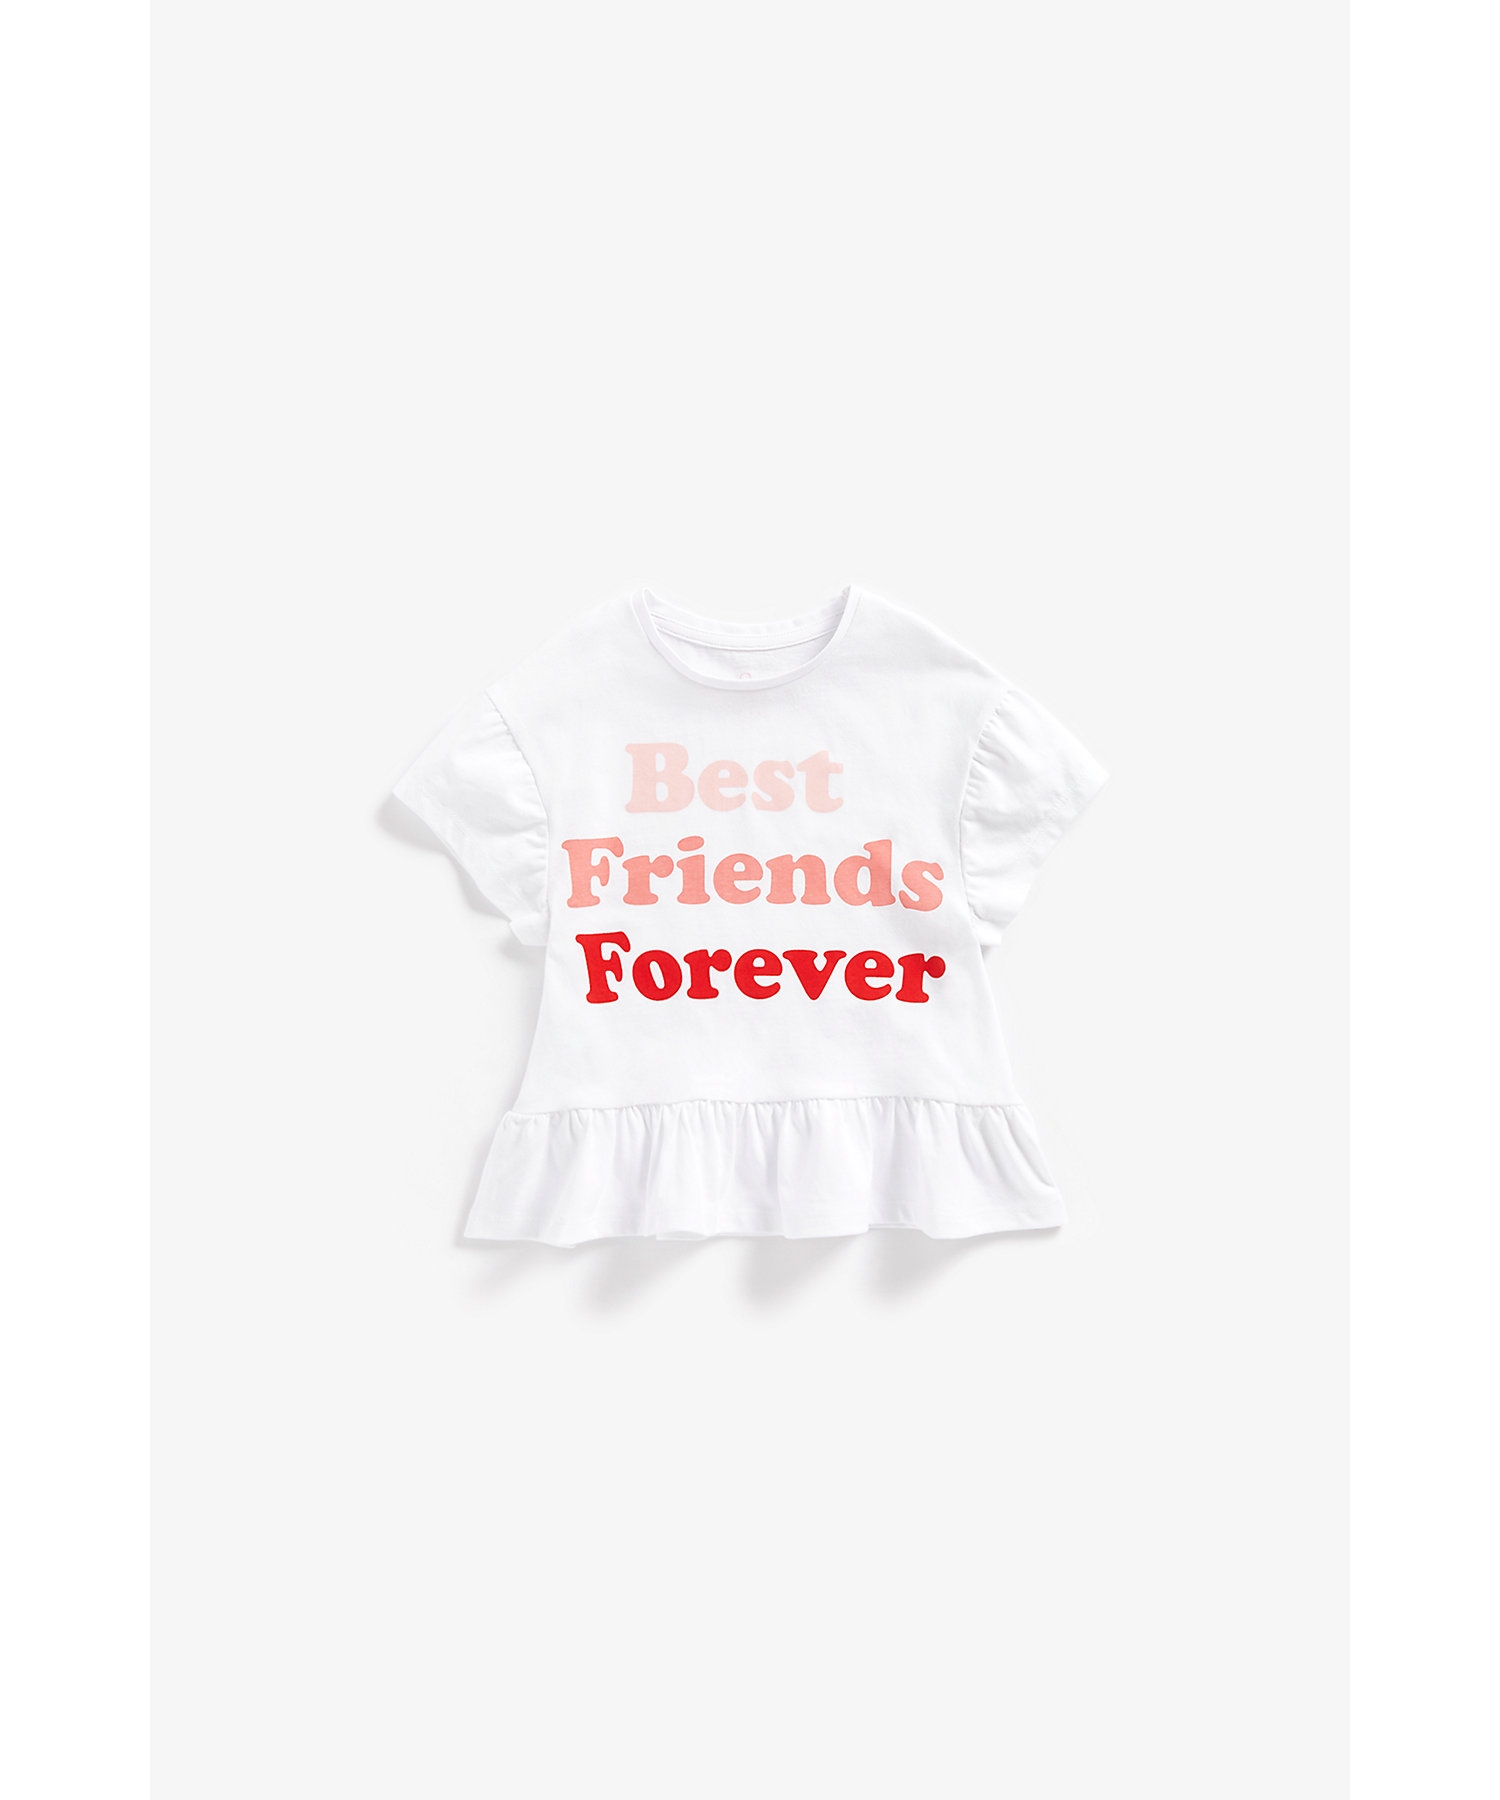 Girls Short Sleeves T-Shirt Best Friends Forever Printed -White